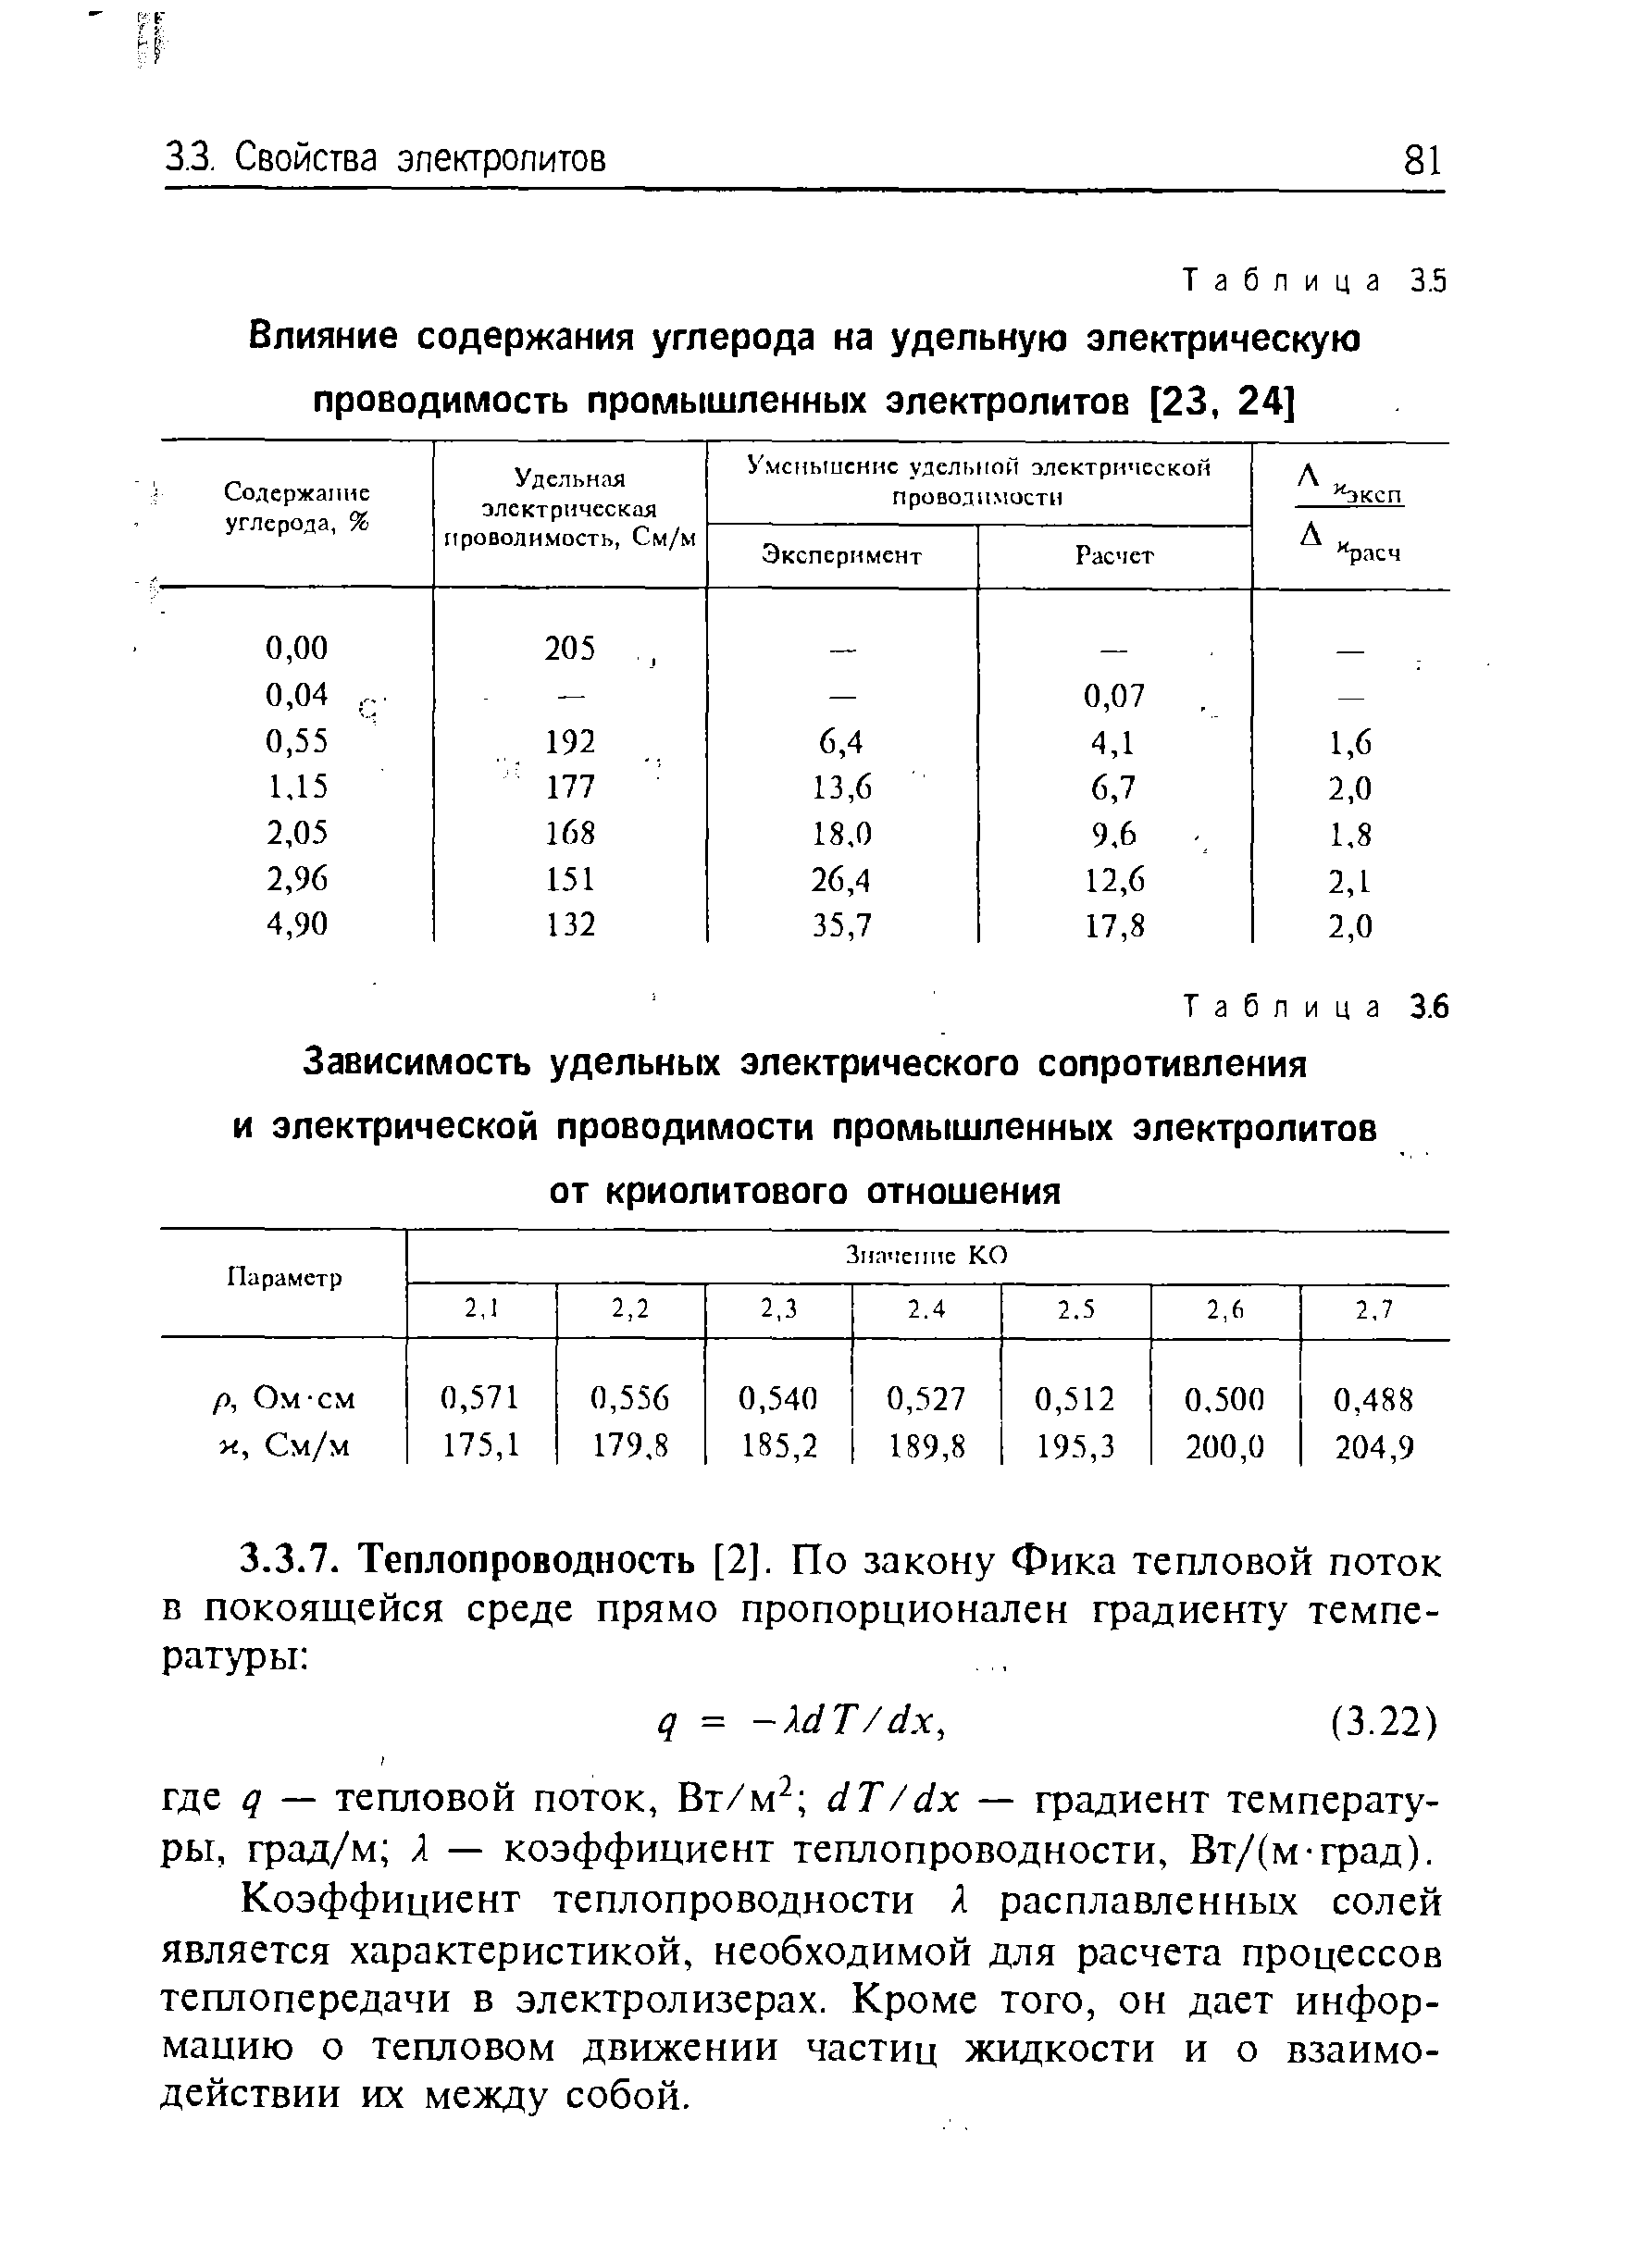 Удельная электрическая проводимость таблица